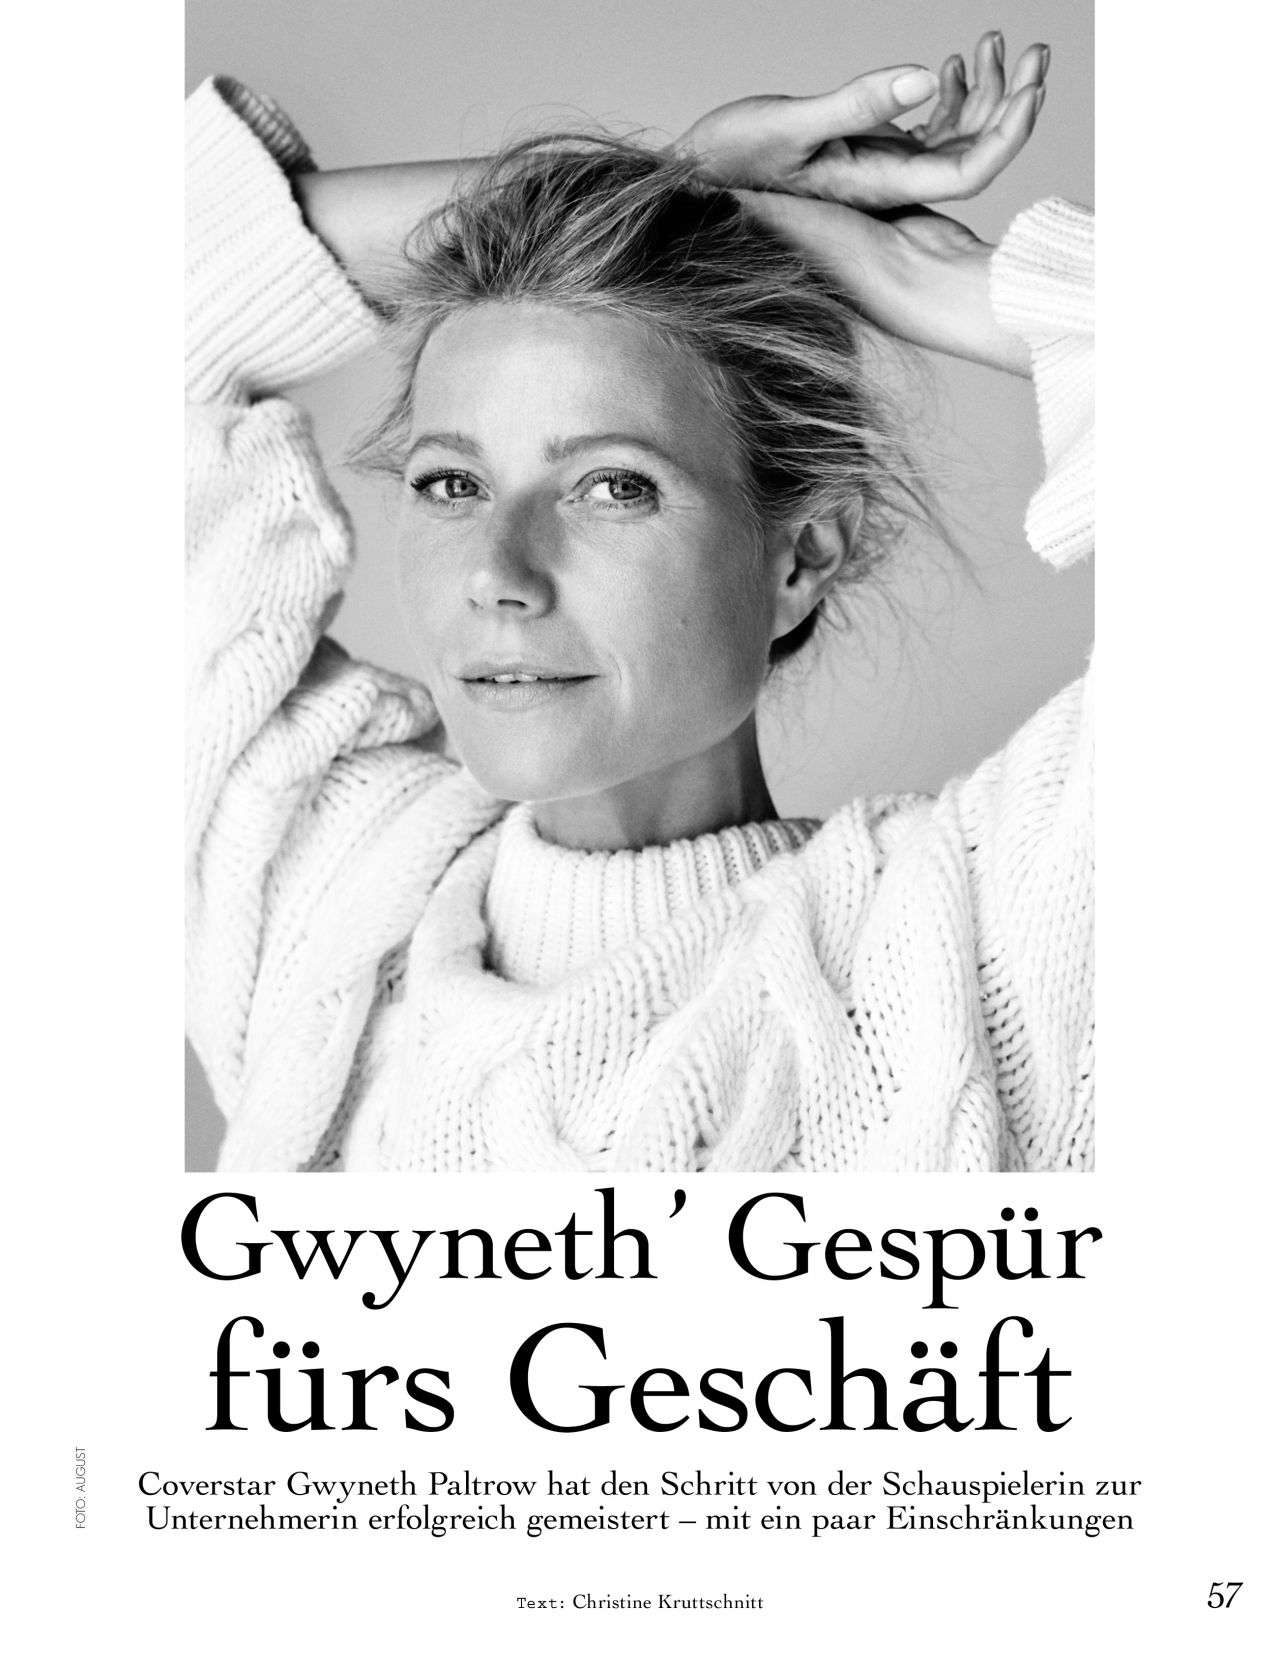 Gwyneth Paltrow - myself Magazine October 2019 Issue • CelebMafia